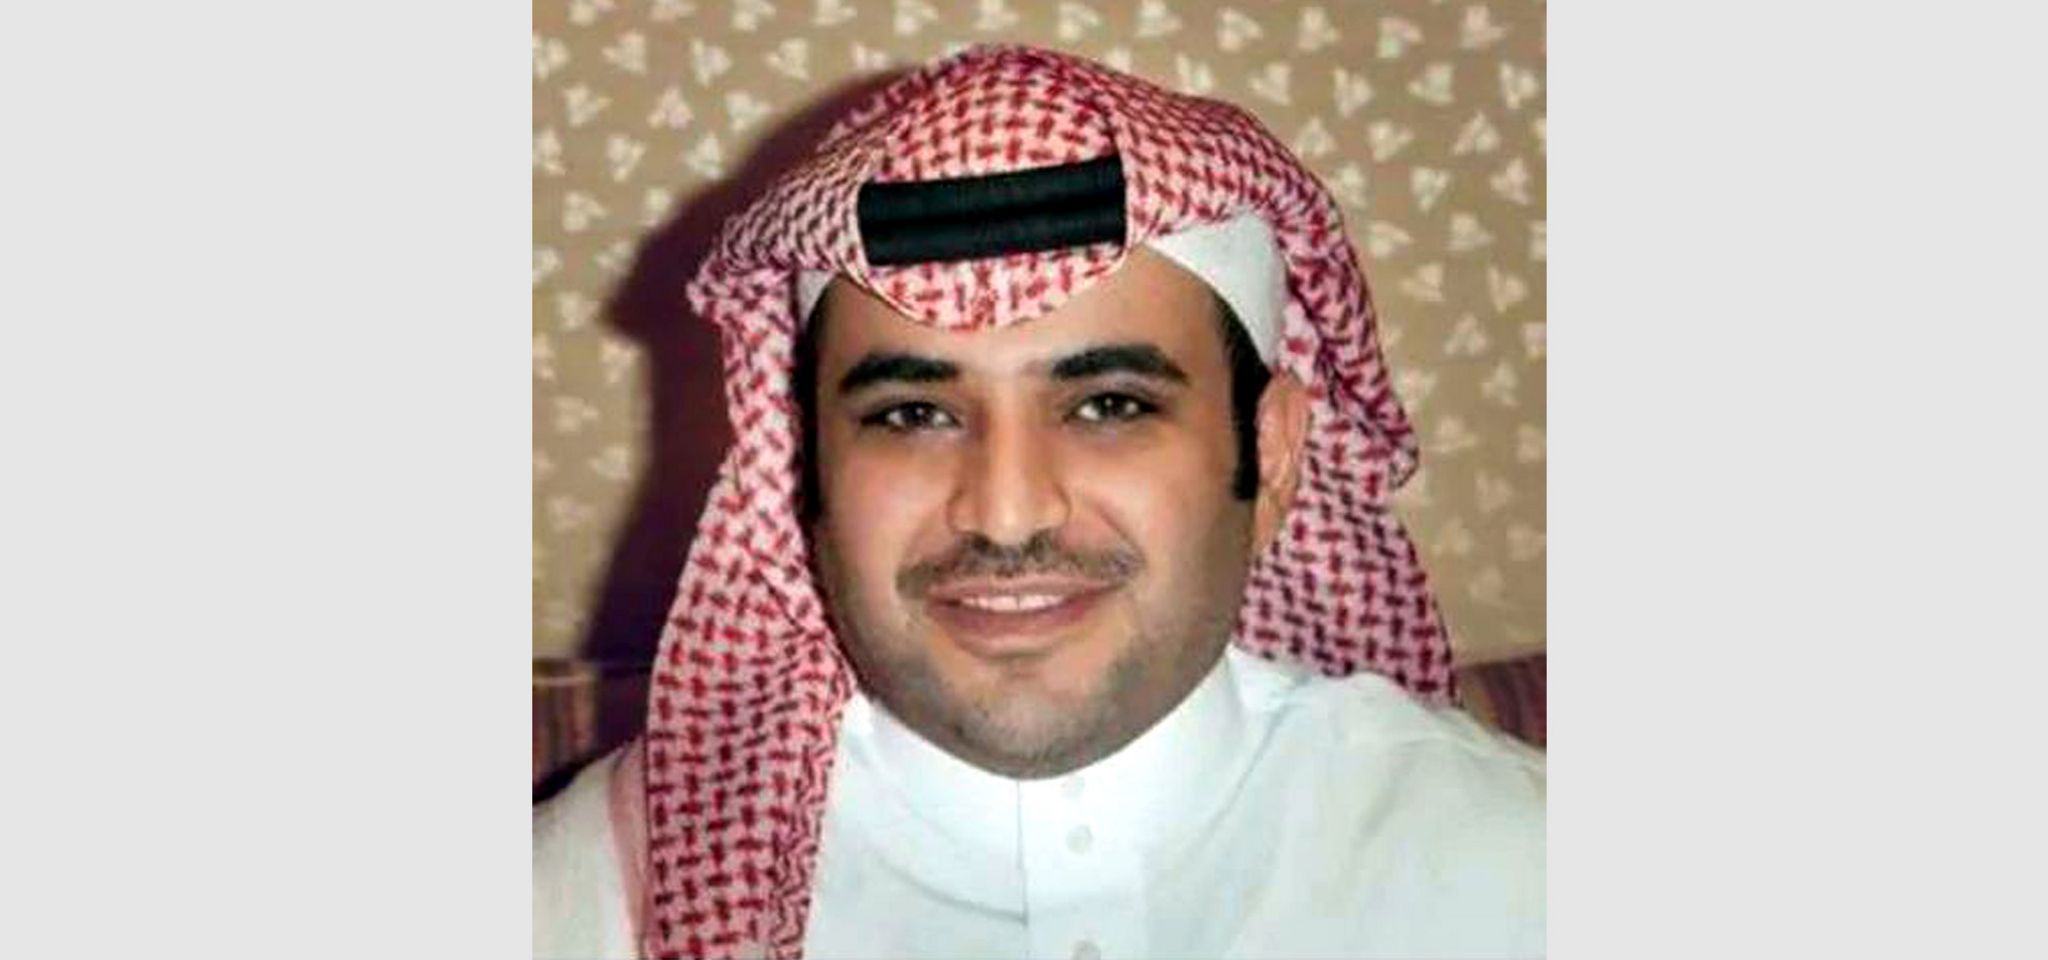 Saud al Qahtani